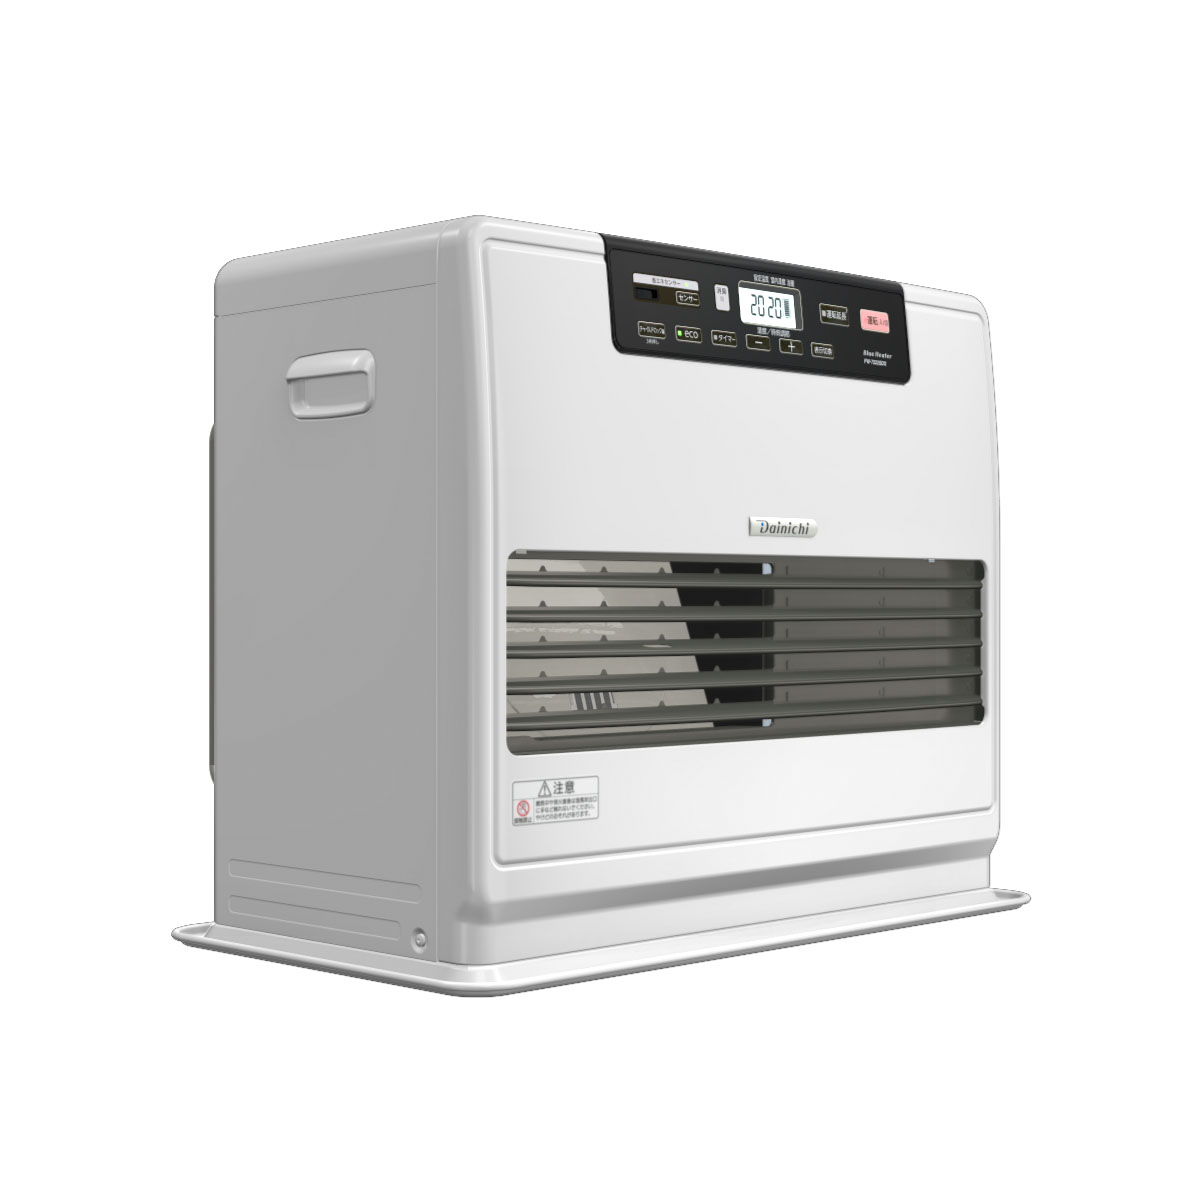 冷暖房/空調 ファンヒーター SDX TYPE【2022年モデル】 | 家庭用石油ファンヒーター | 製品紹介 